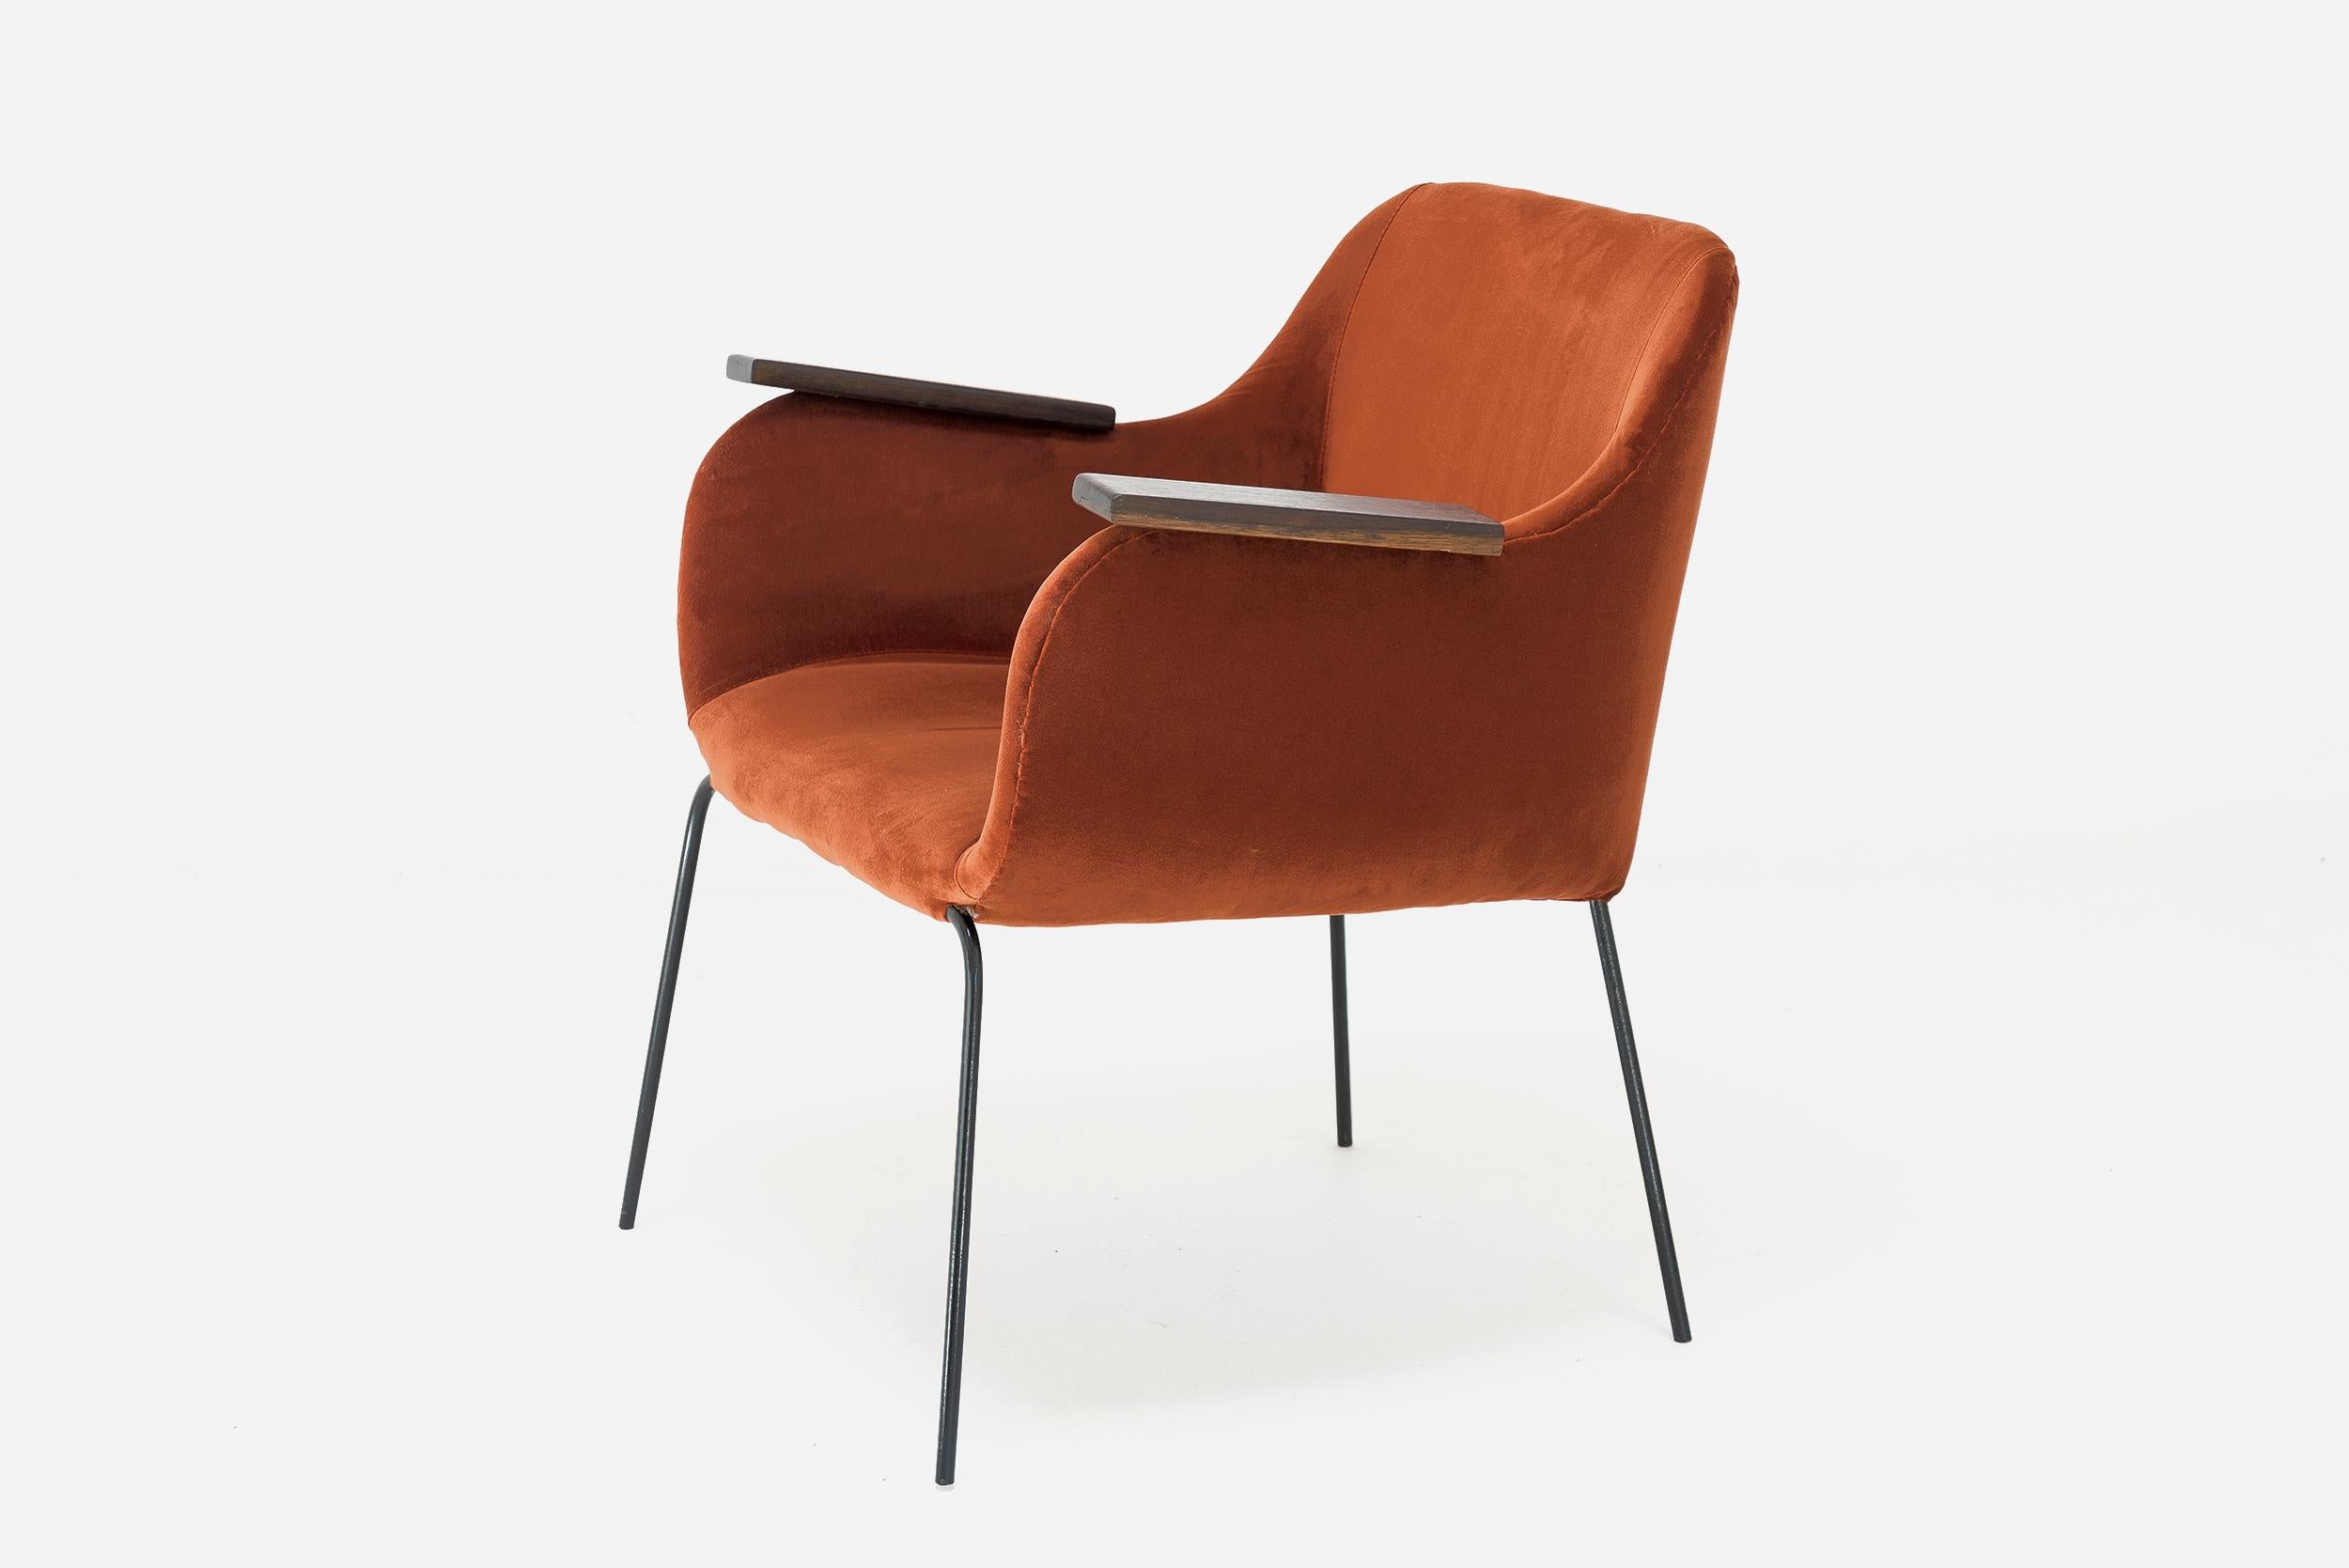 Carlos Hauner & Martin Eisler
Pair of armchairs
Manufactured by Forma Moveis
Brazil, 1950
Iron, velvet upholstery

Orange Velvet Upholstery 

Measurements
63 cm x 53 cm x 76h cm
24,8 in x 20,86 in x 29,92h in

Bio
Beside Carlos Hauner,